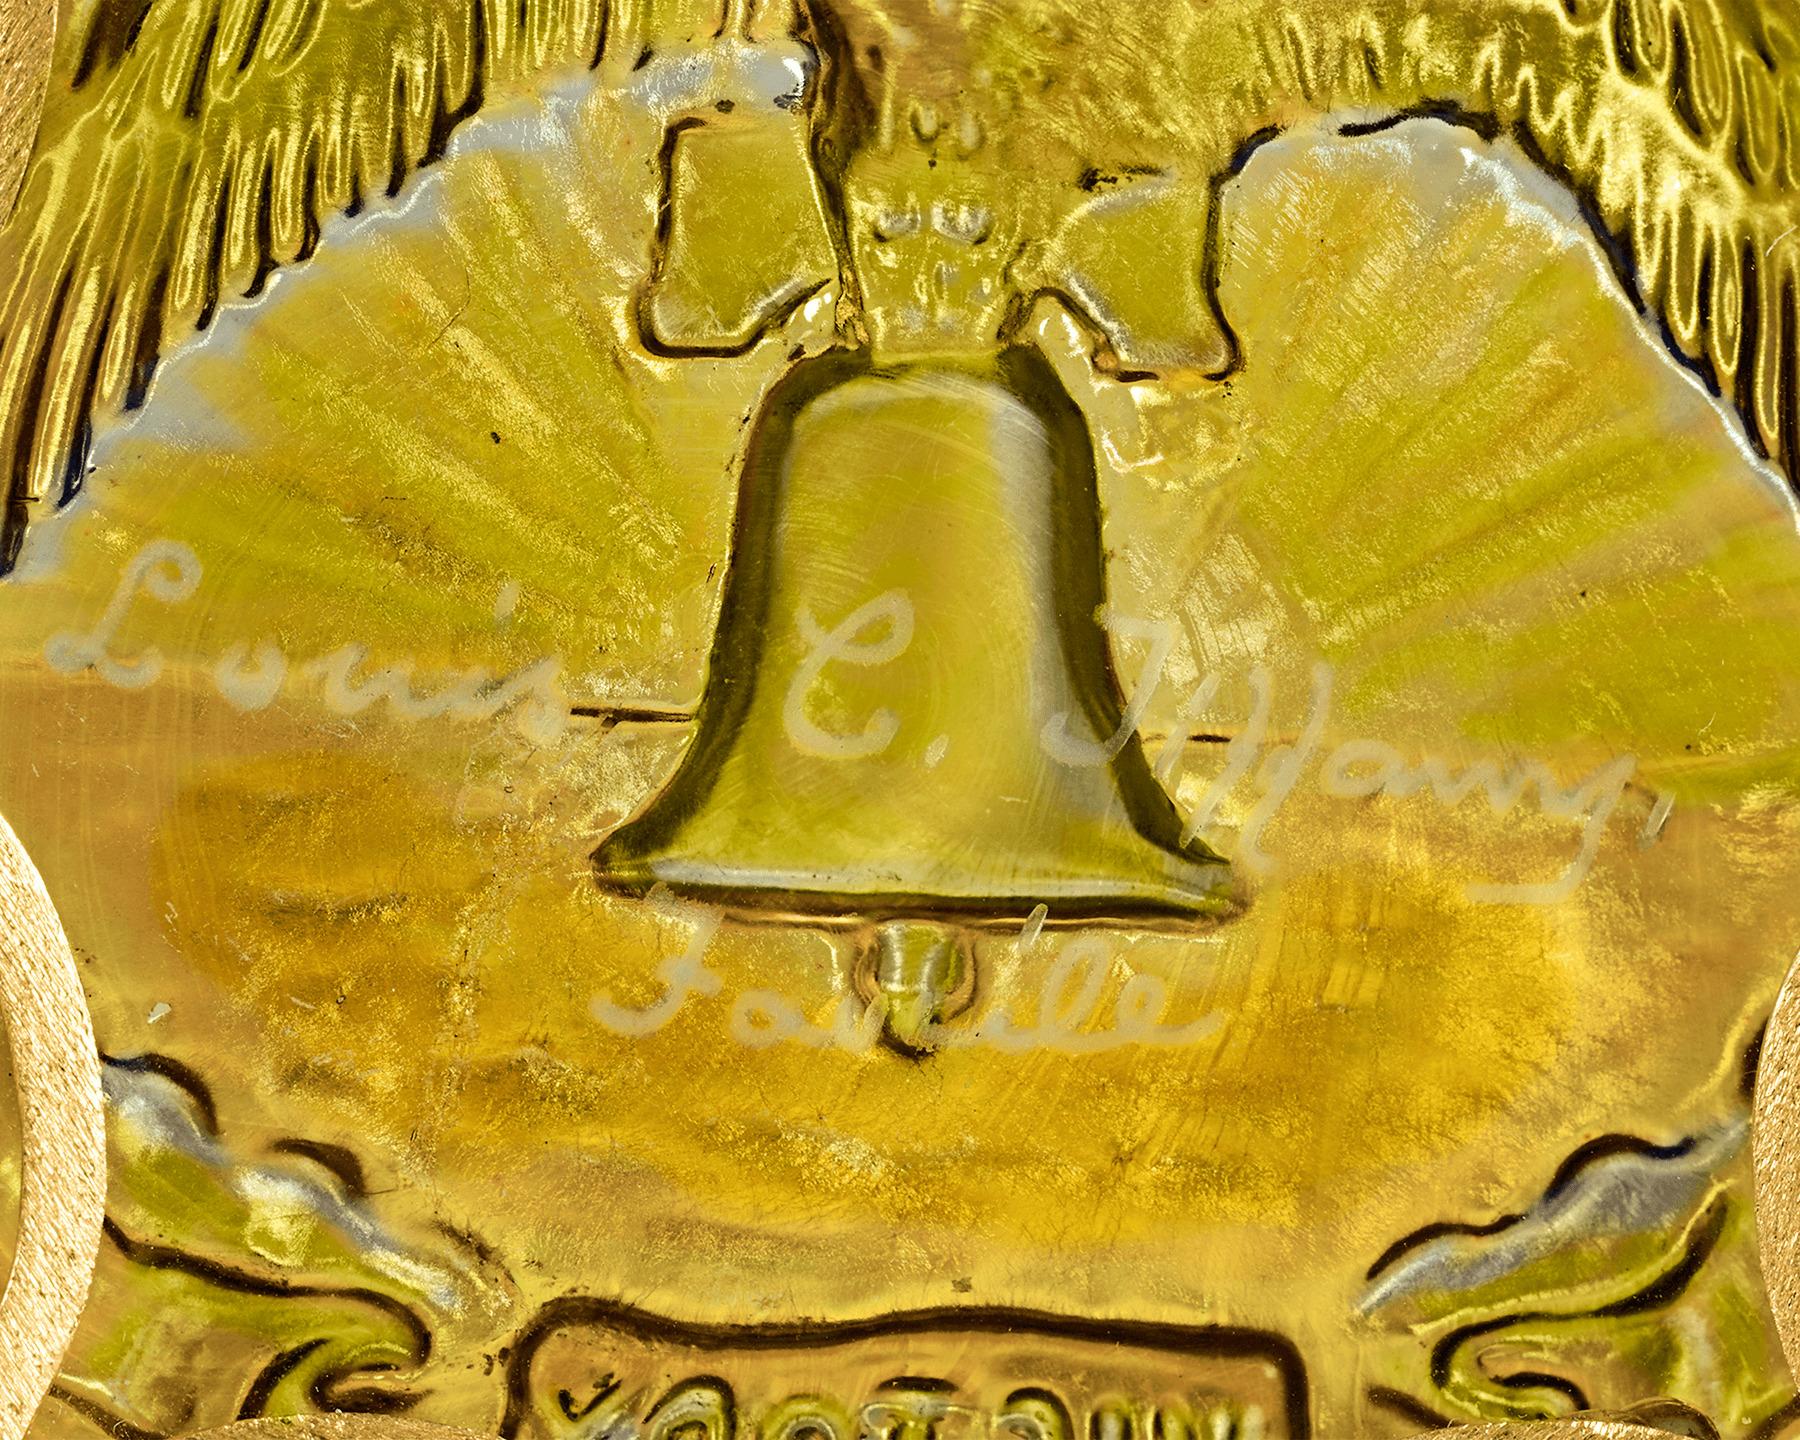 Louis Comfort Tiffany, pionnier de l'Art nouveau et artisan américain talentueux, a créé ce médaillon en verre favrile de la Victoire pour célébrer la victoire des Alliés lors de la Première Guerre mondiale. Le majestueux verre d'art irisé de